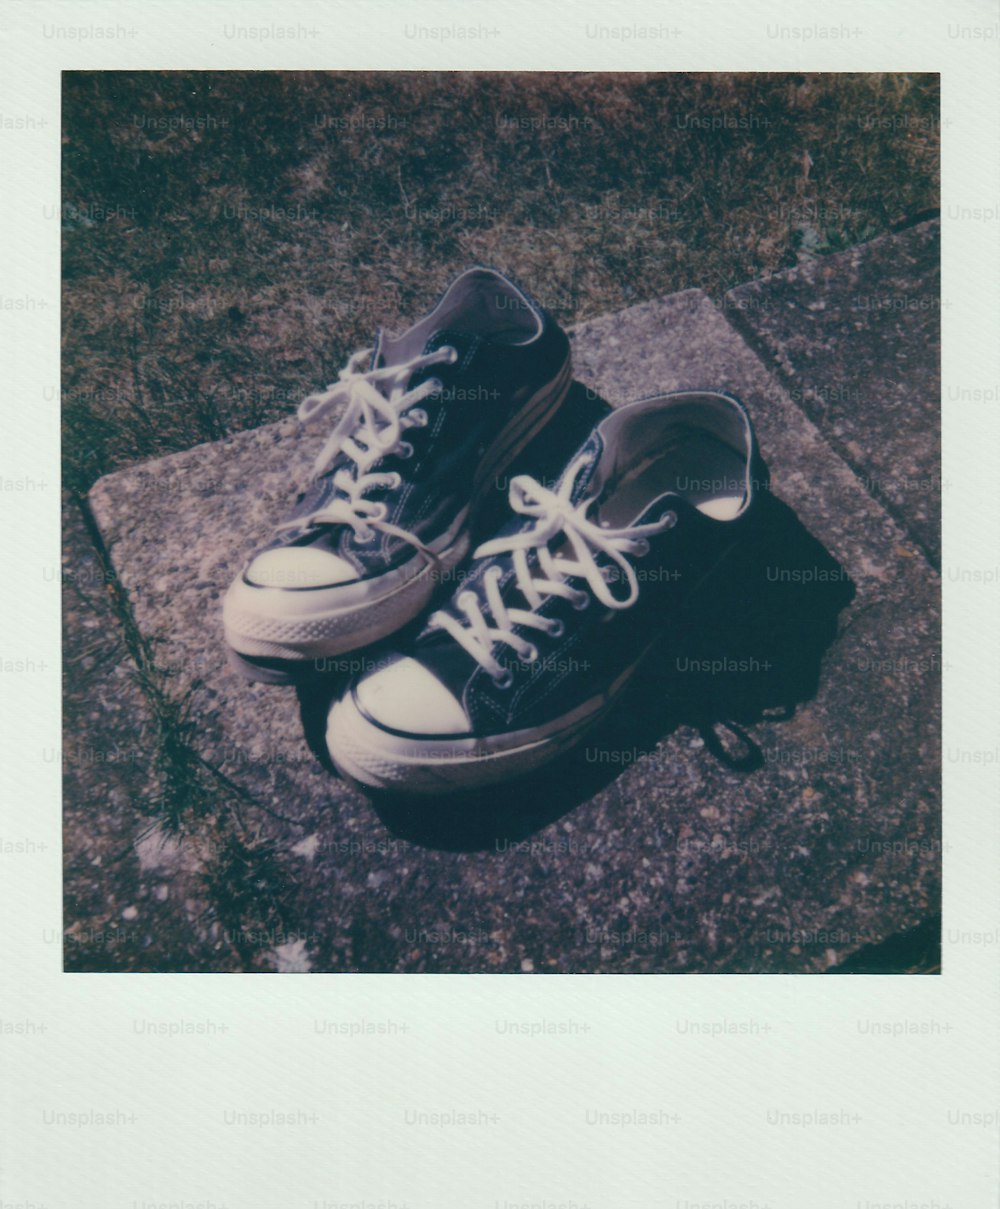 ein Paar schwarz-weiße Schuhe, die auf einem Bürgersteig sitzen